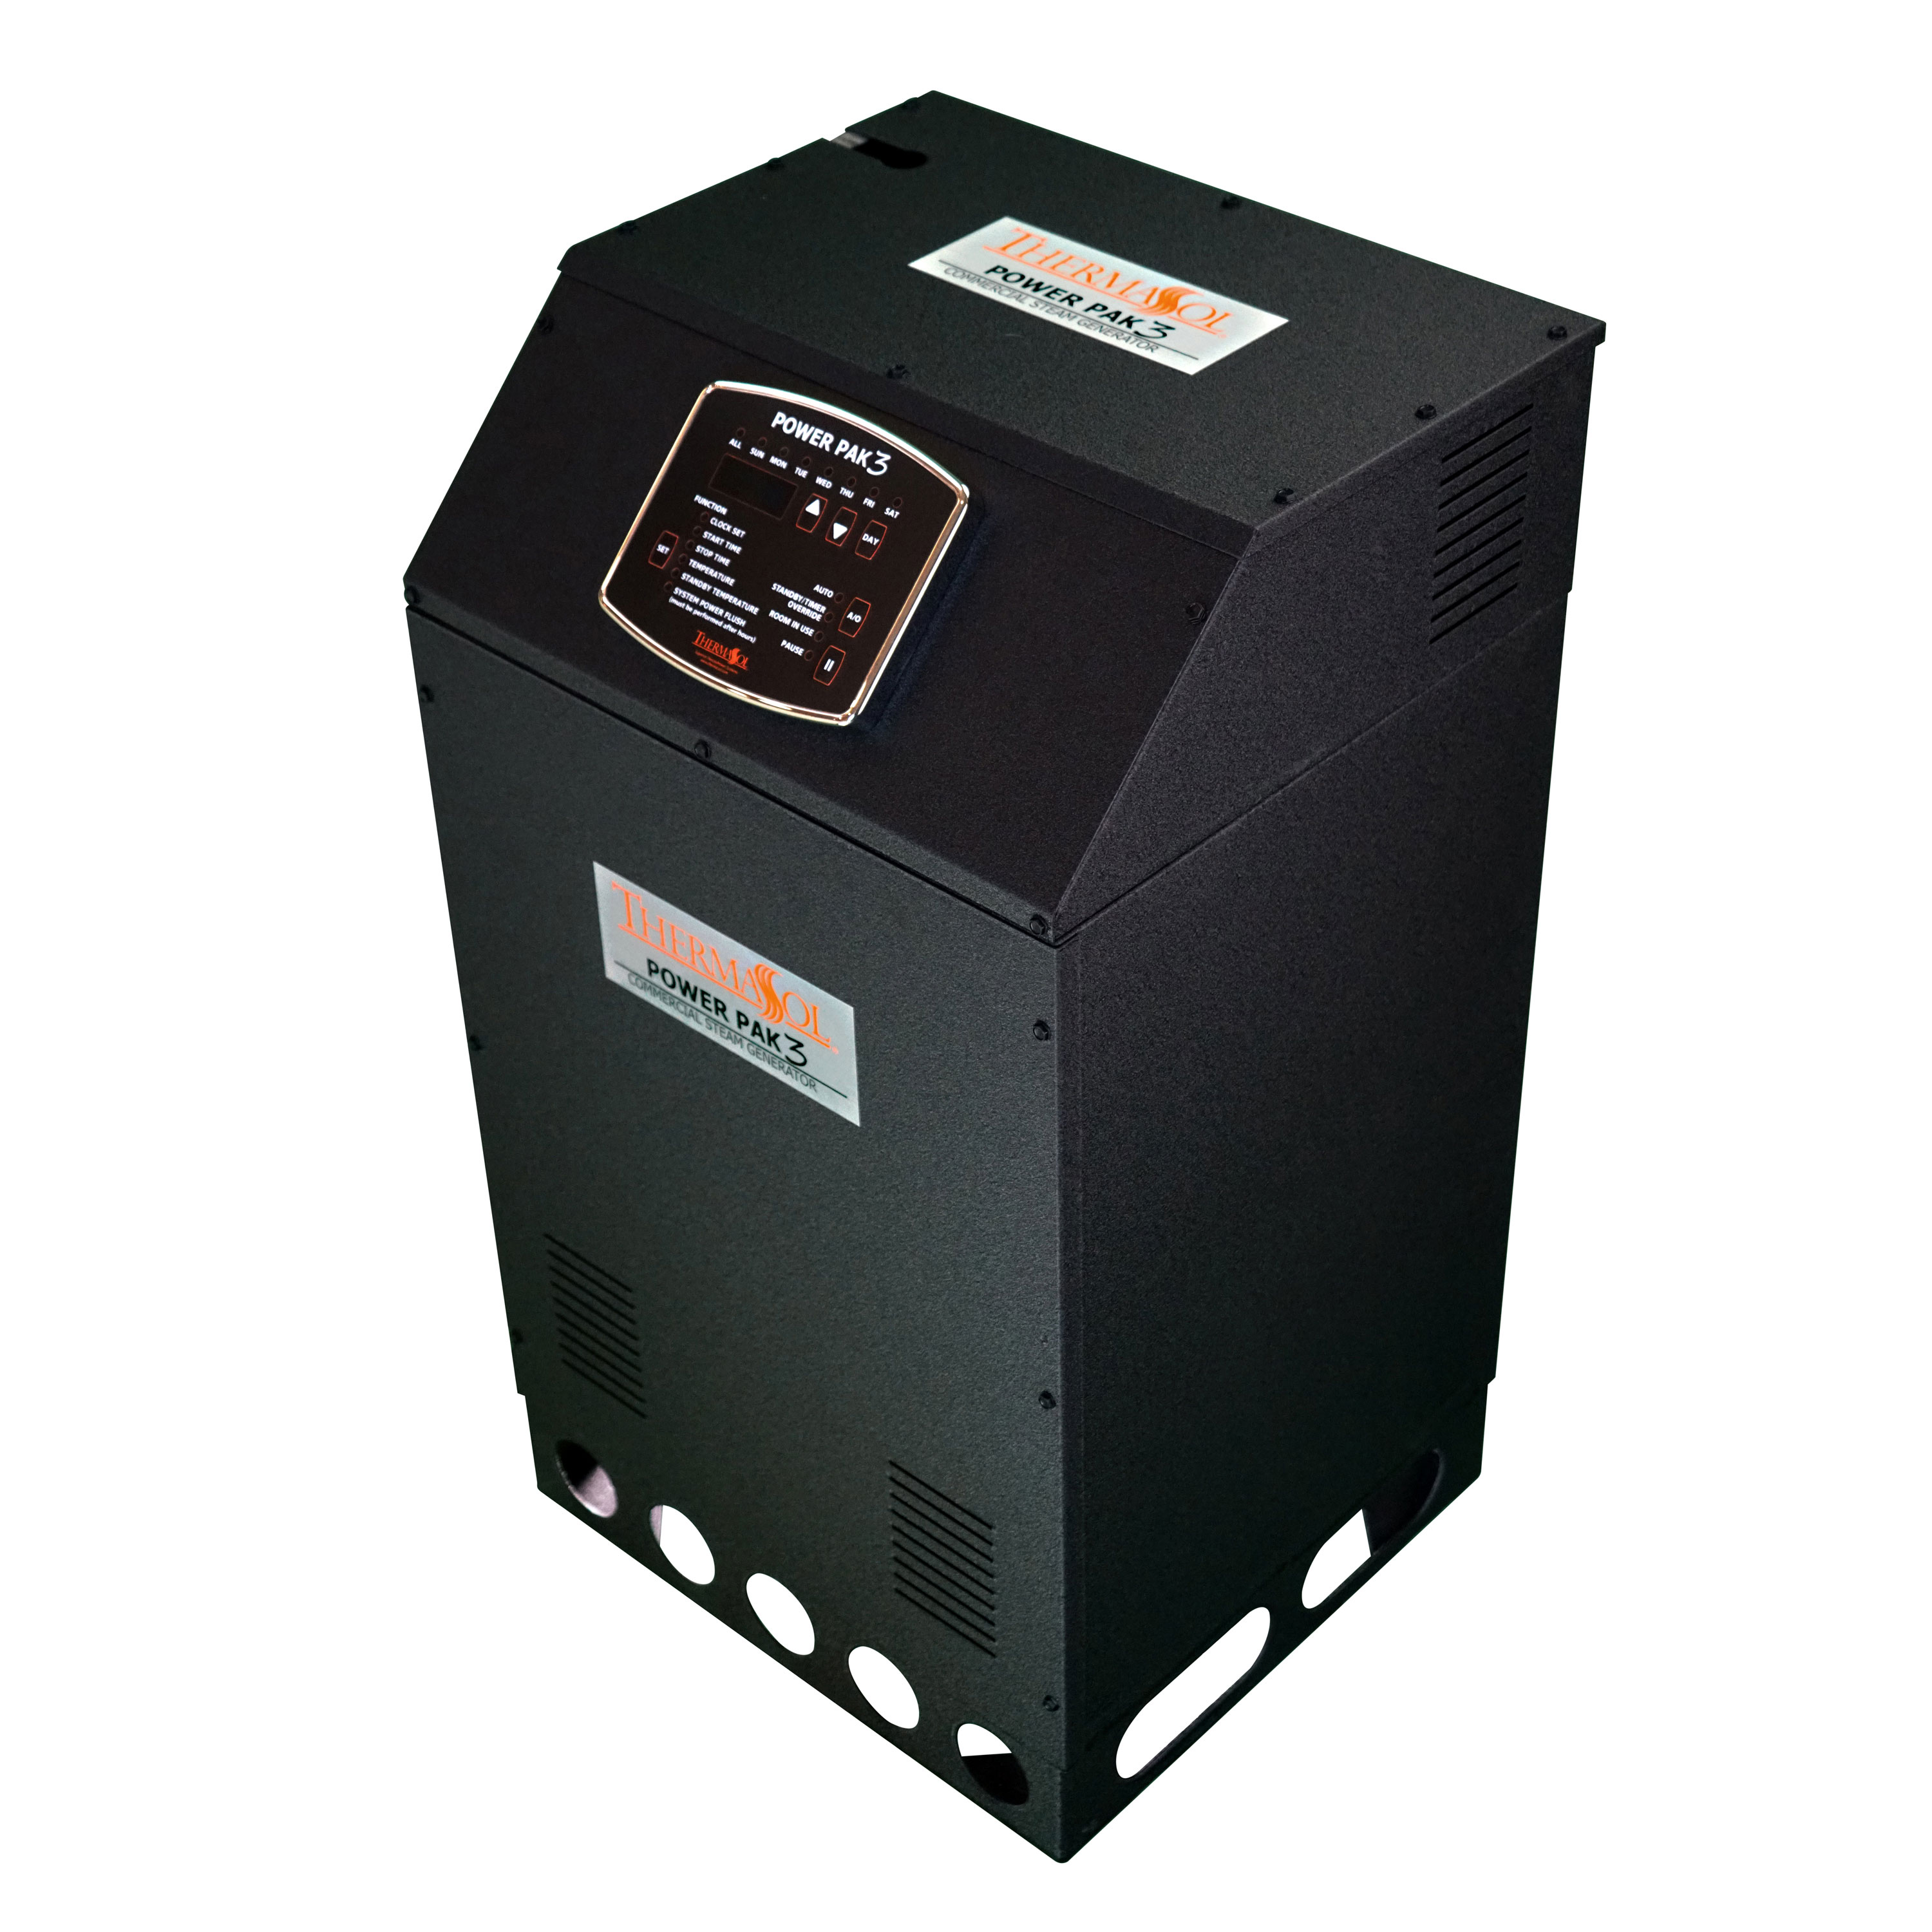 Thermasol PP24LR-480 PowerPak Series III Commercial Steam Generator - 24LR-480